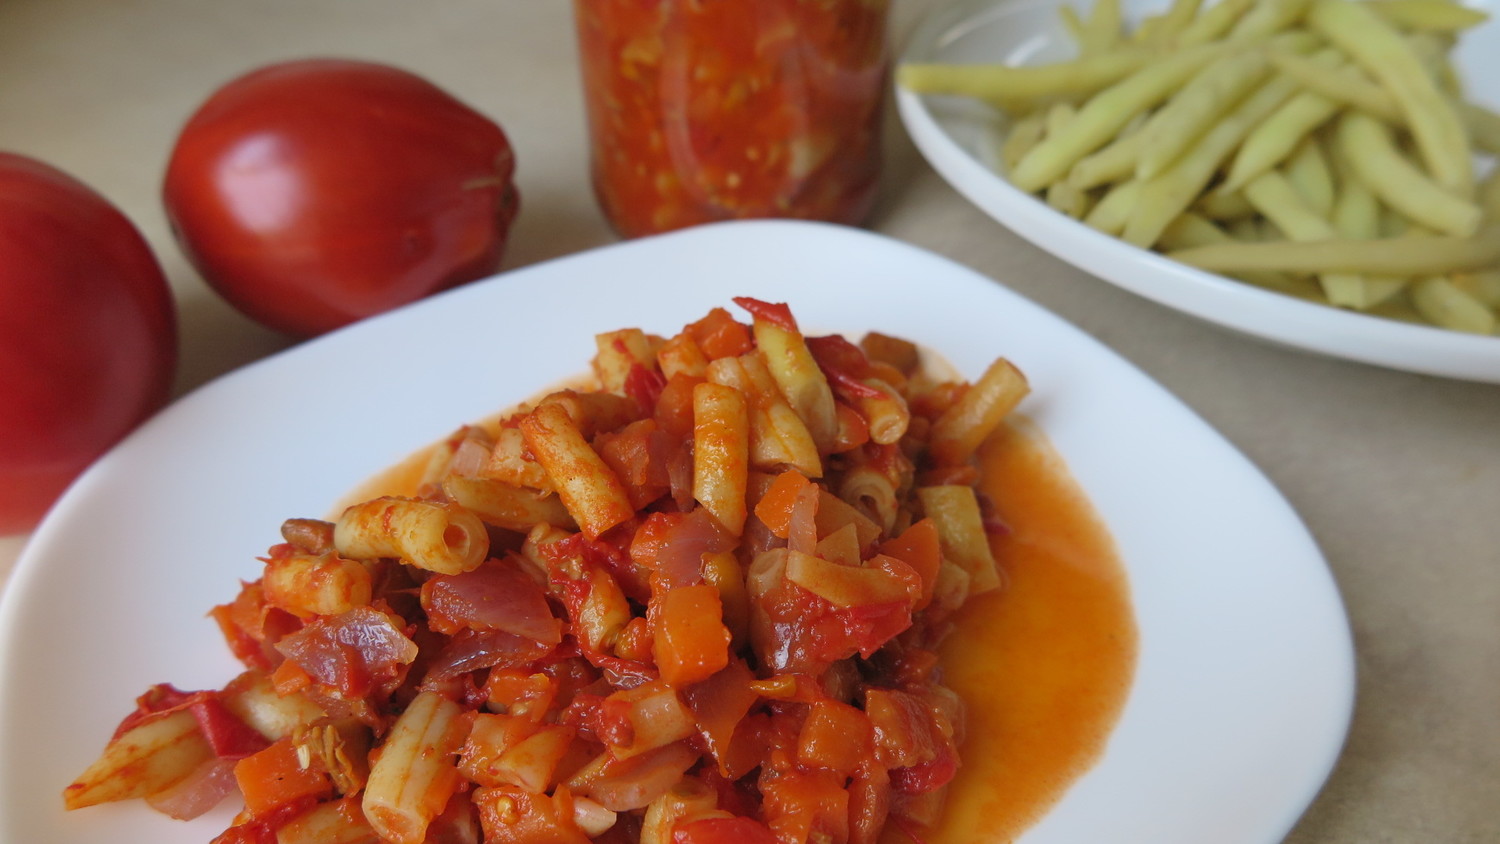 Mišrainė iš šparaginių pupelių su pomidorais